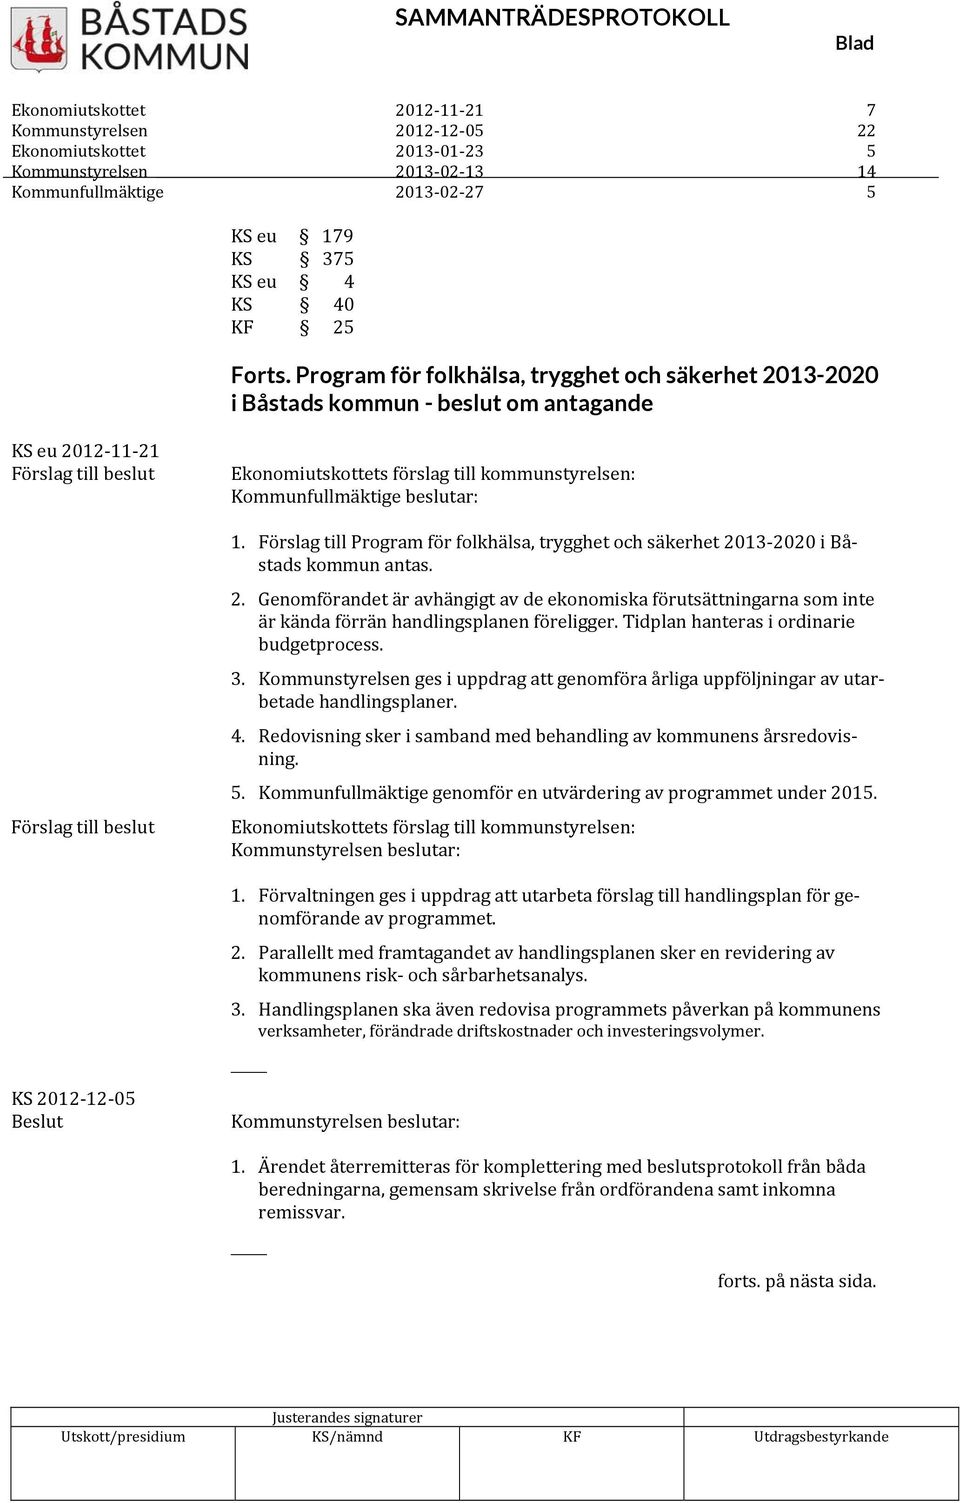 kommunstyrelsen: 1. Förslag till Program för folkhälsa, trygghet och säkerhet 2013 2020 i Båstads kommun antas. 2. Genomförandet är avhängigt av de ekonomiska förutsättningarna som inte är kända förrän handlingsplanen föreligger.